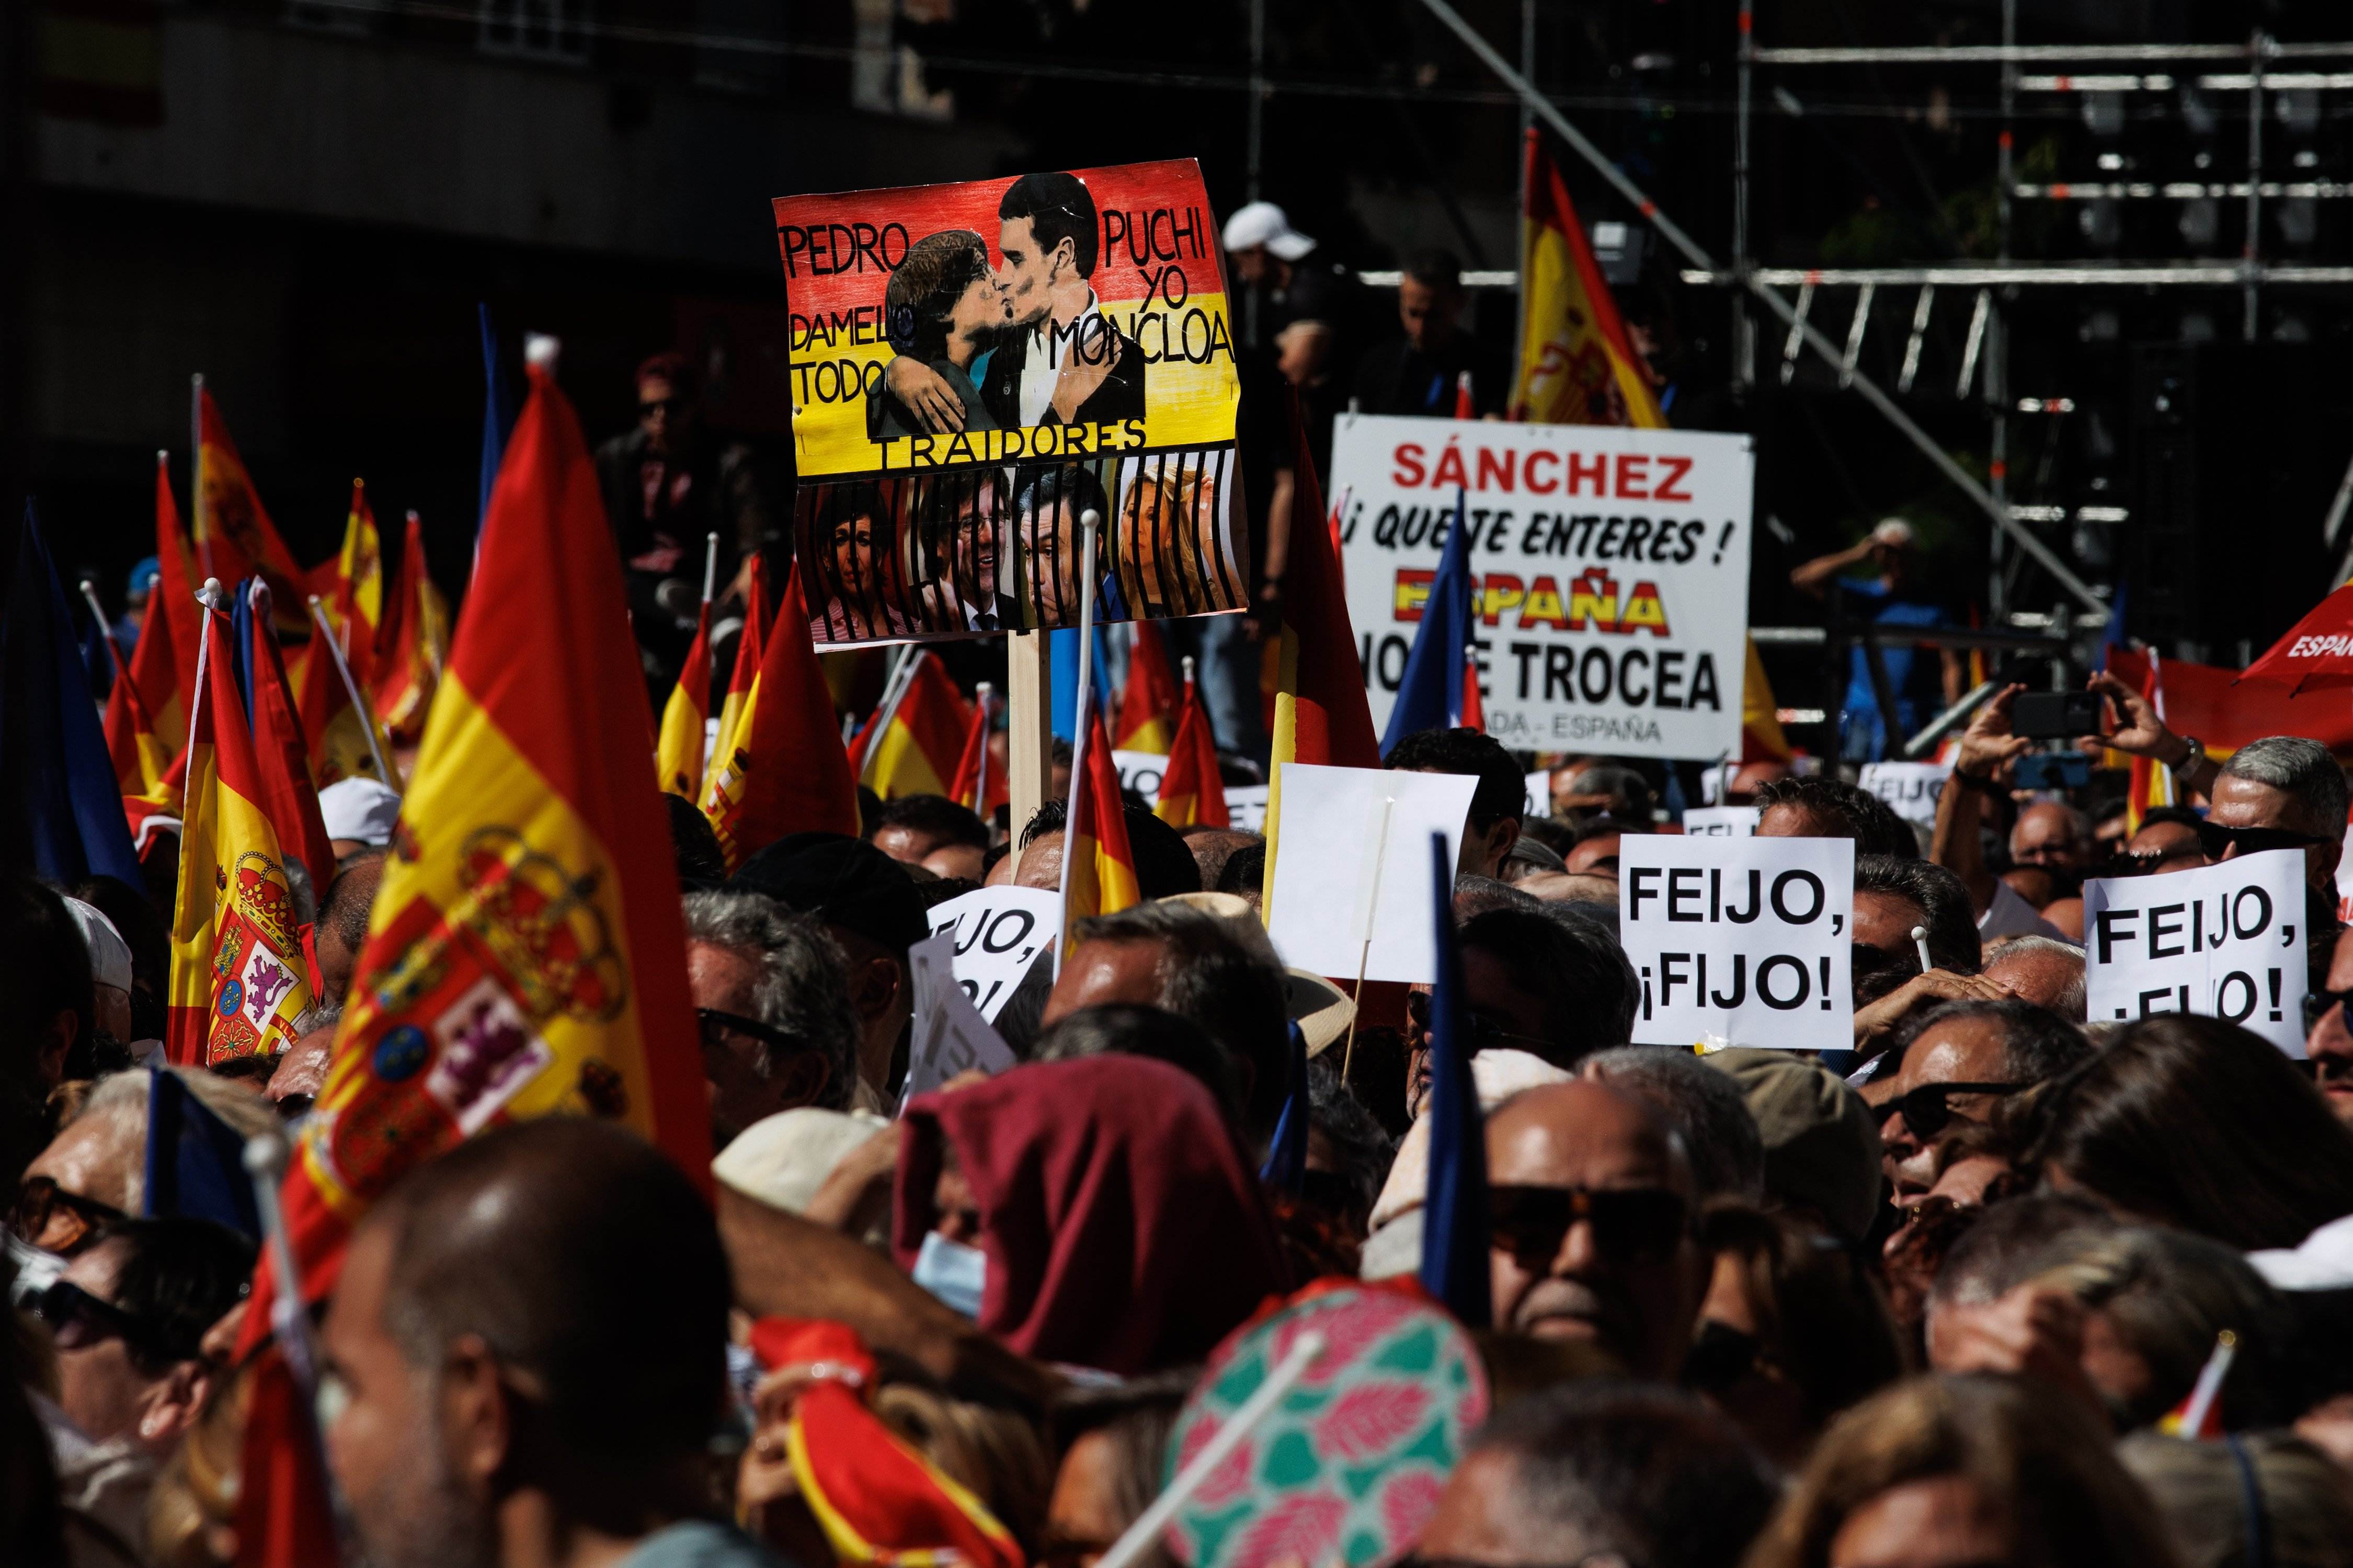 El acto contra la amnistía, a pie de calle: "Puigdemont tiene que pudrirse en la cárcel"